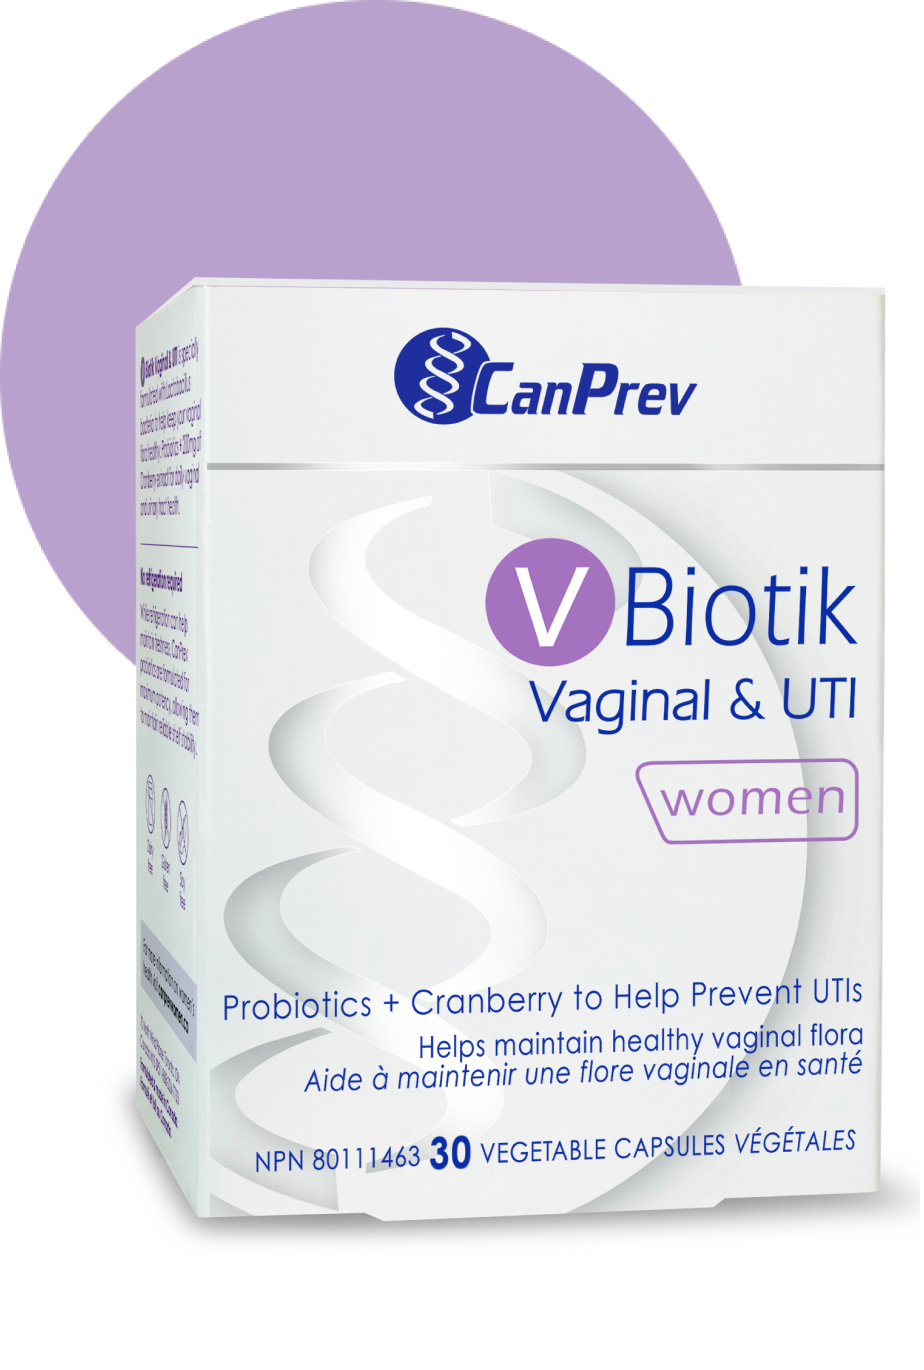 V-Biotik Vaginal & UTI